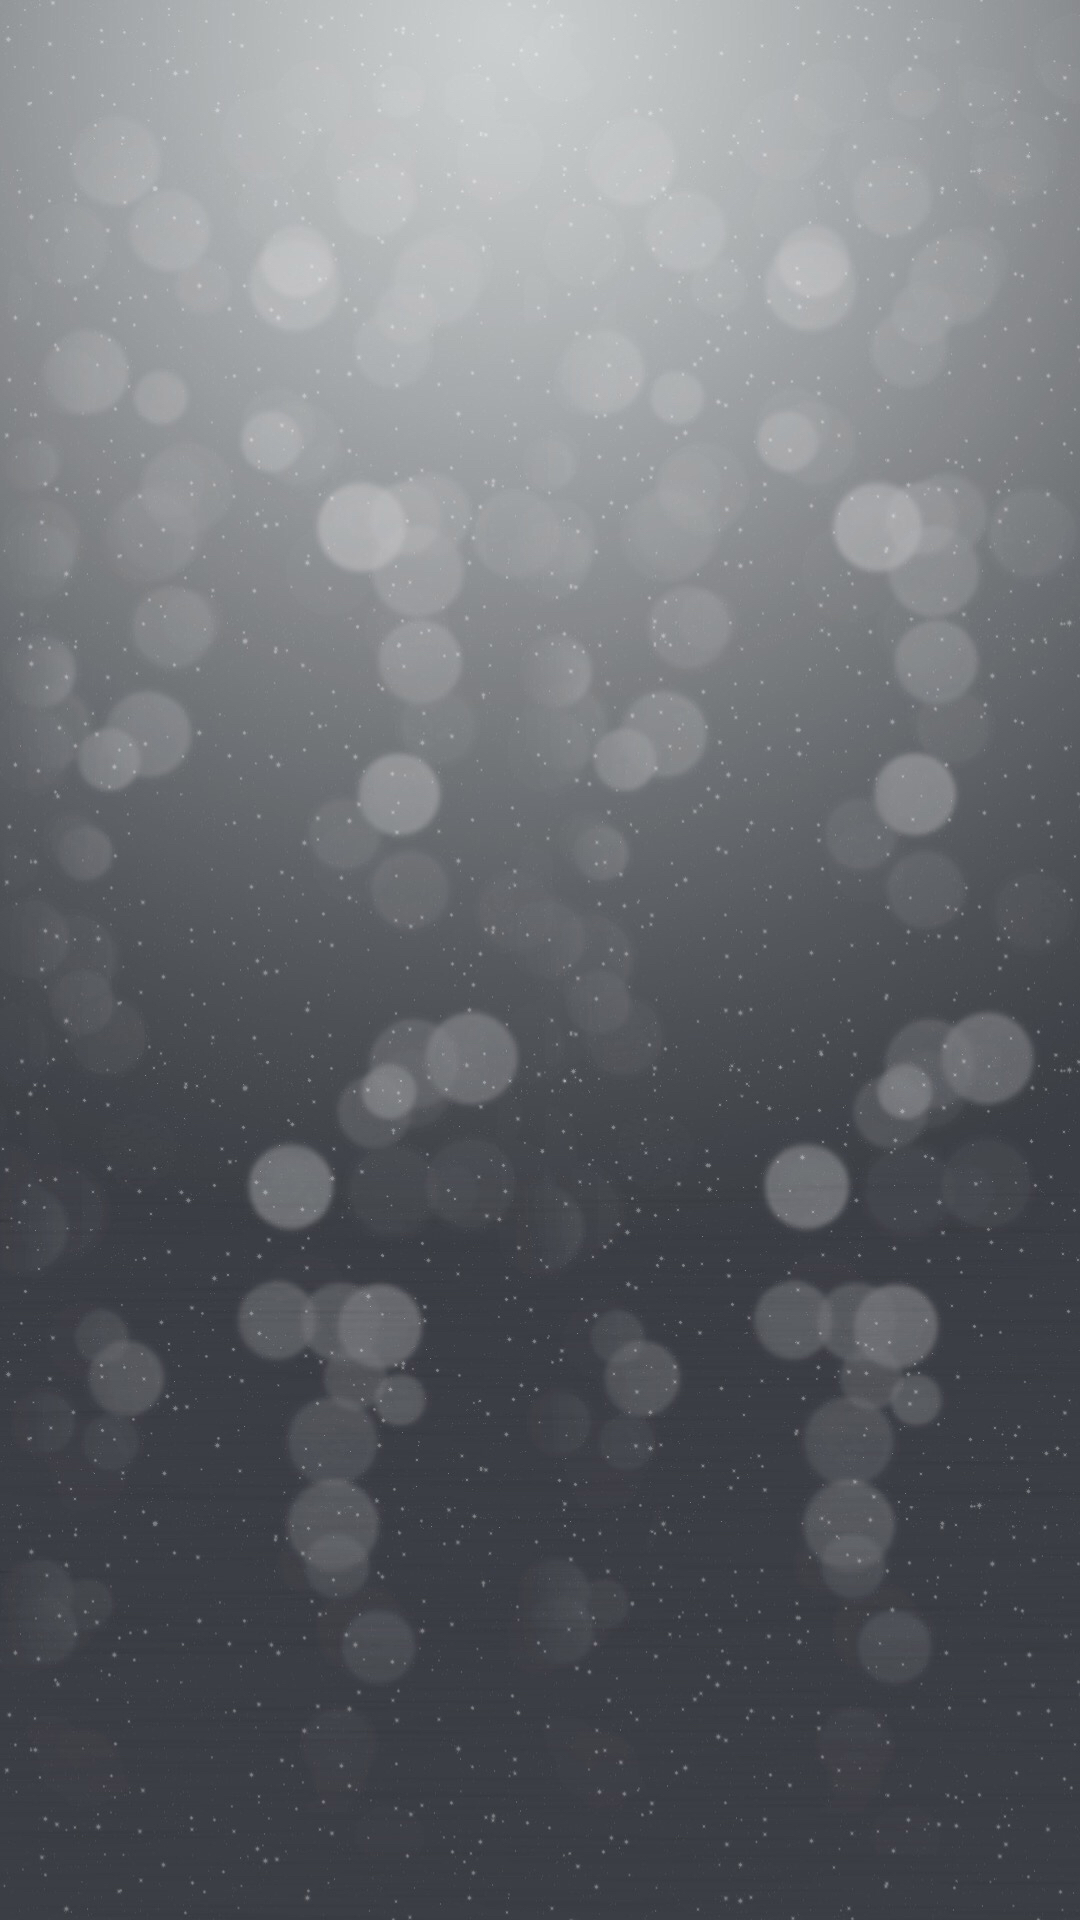 einfache hd wallpaper android,wasser,himmel,muster,wolke,schwarz und weiß